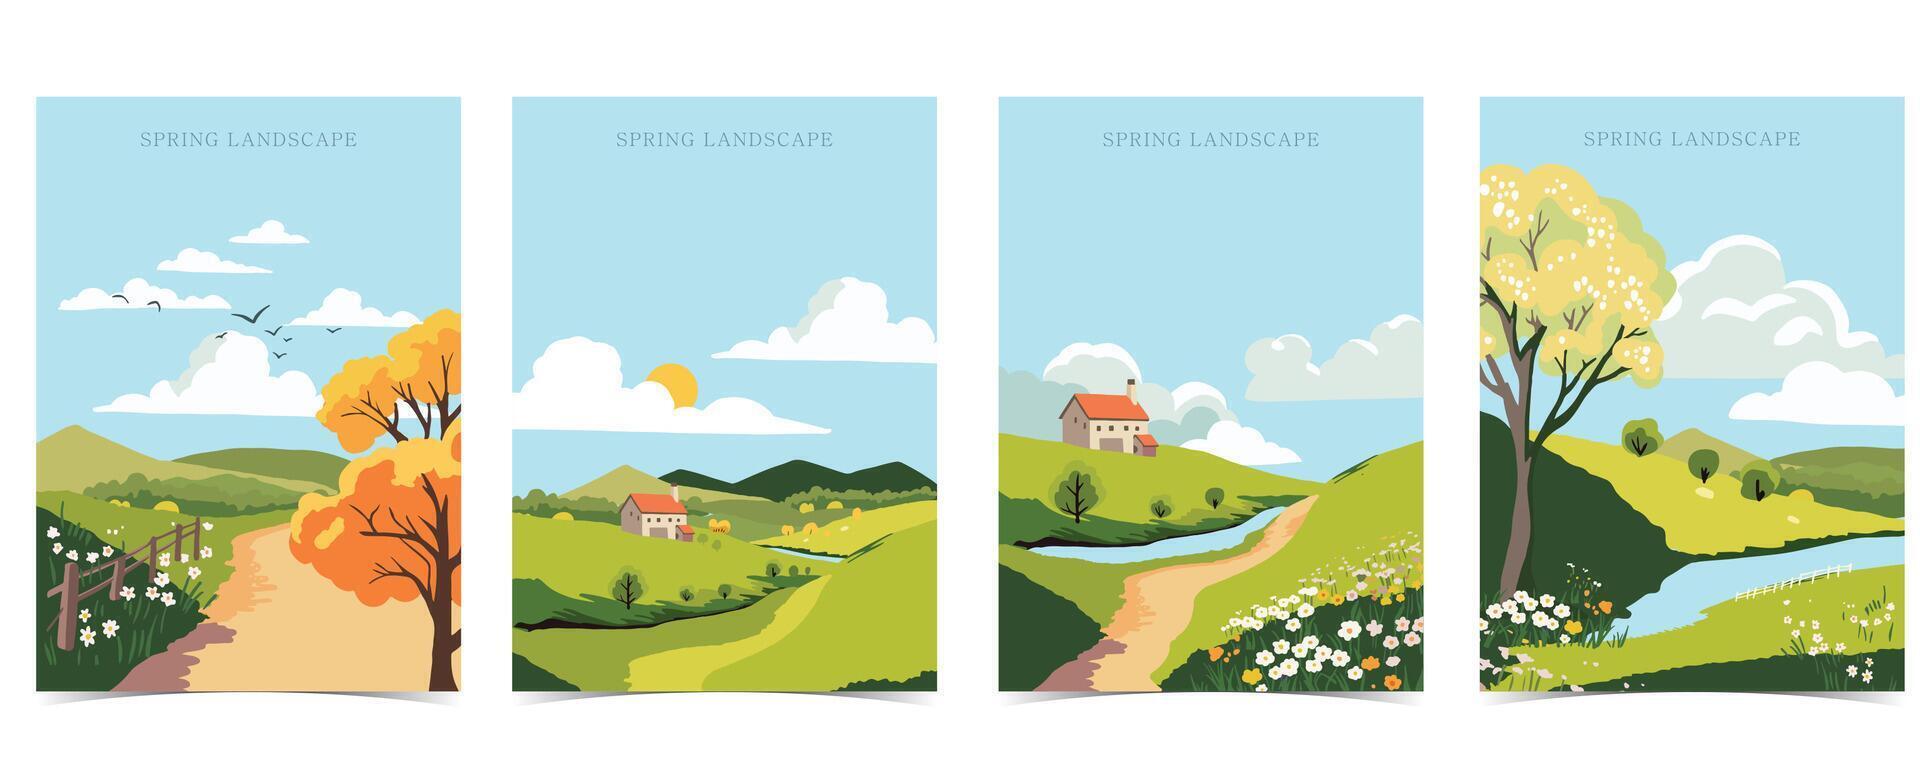 Frühling Landschaft Hintergrund mit Berg und Baum editierbar Vektor Illustration zum Postkarte, A4 Vertikale Größe